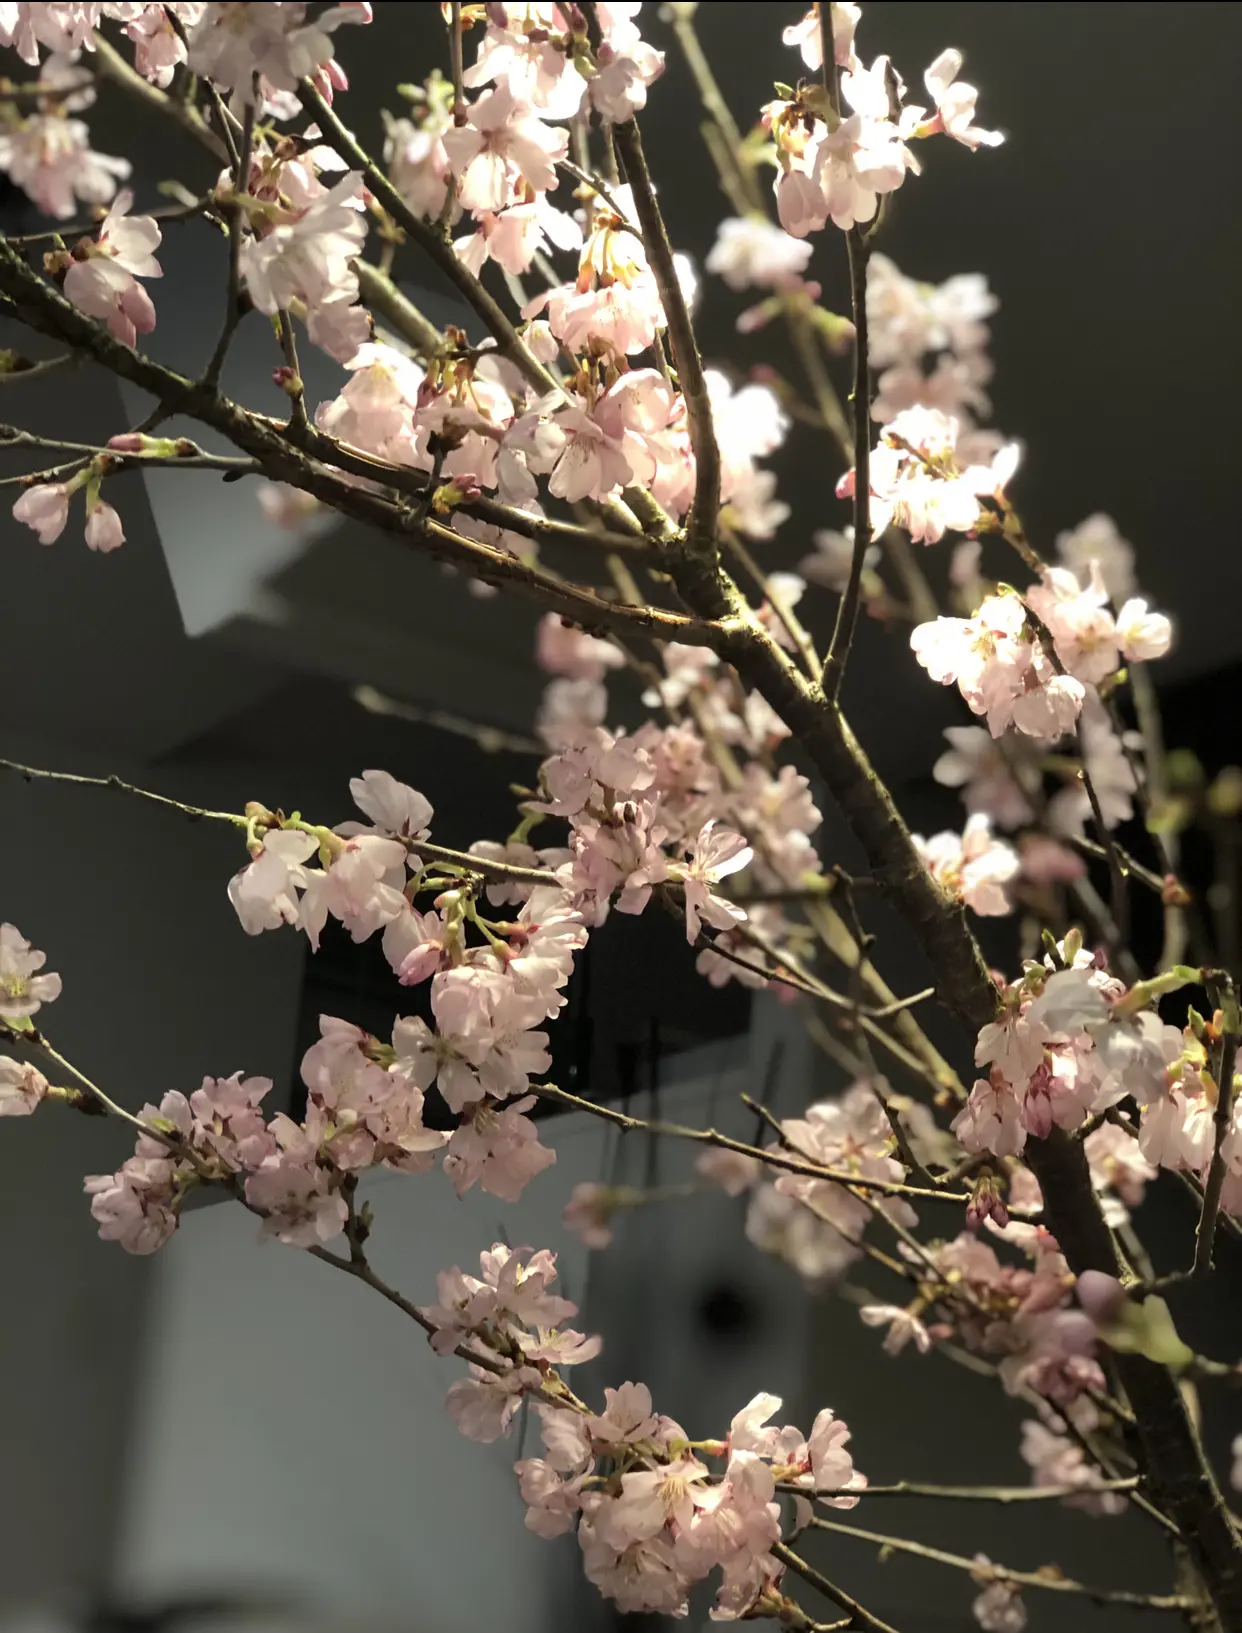 「春は、あげもの」有元葉子さんのレシピでおこもり花見_1_4-2